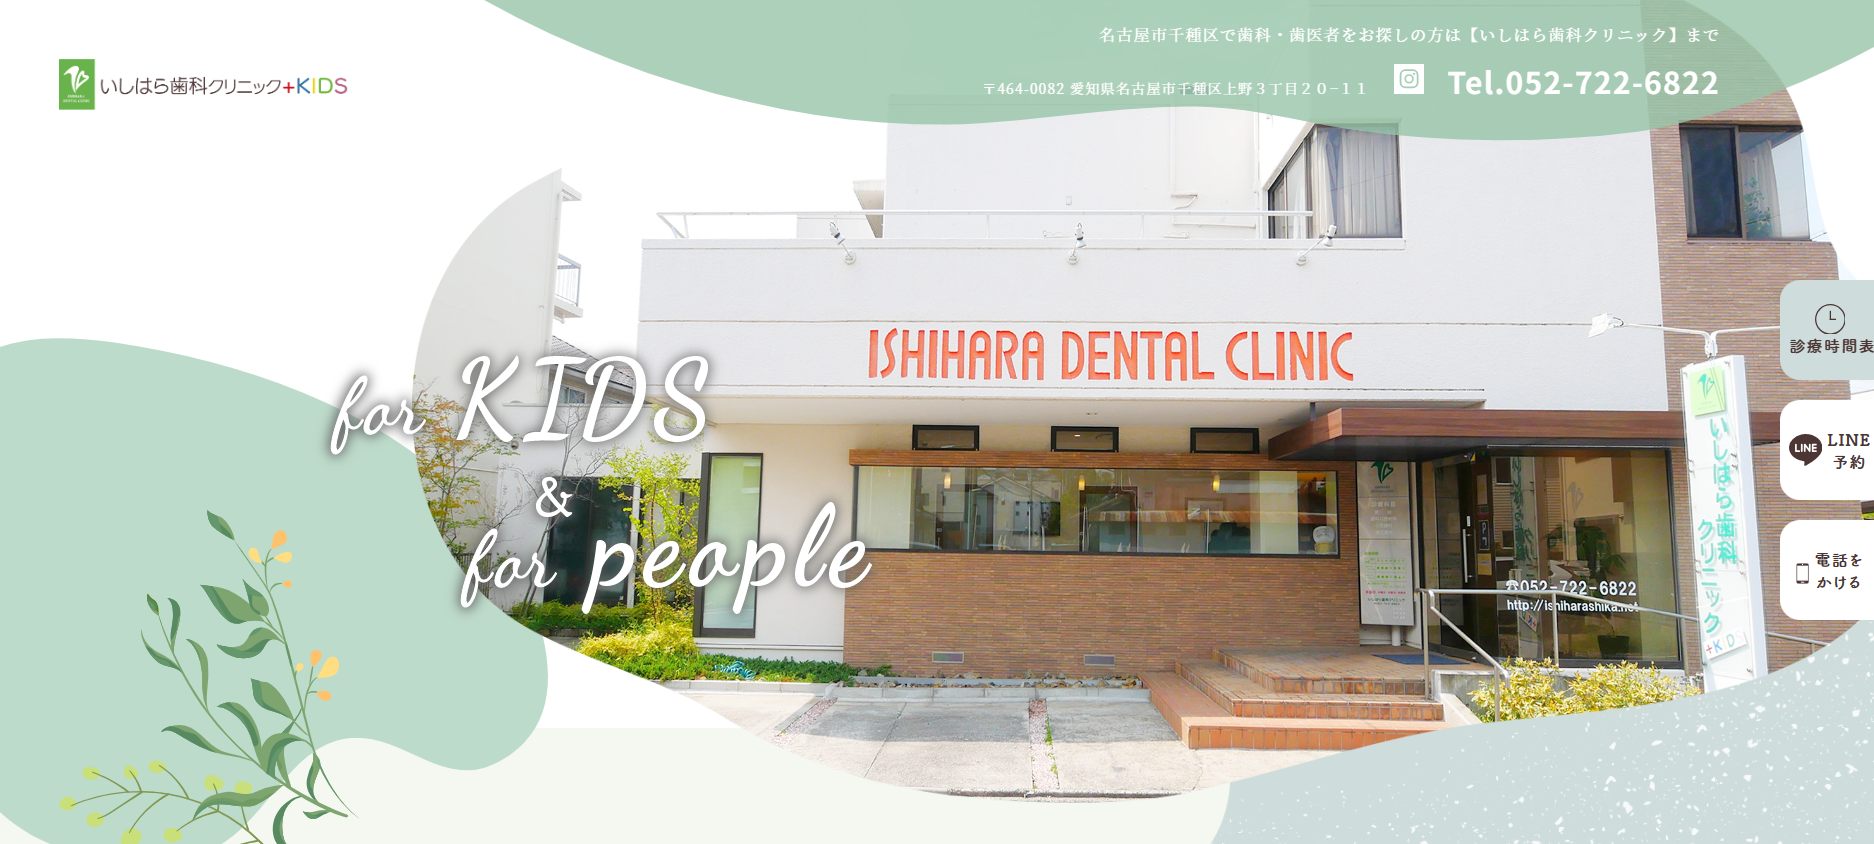 名古屋市の口腔外科におすすめの歯科クリニック5選 いしはら歯科クリニック+KIDS